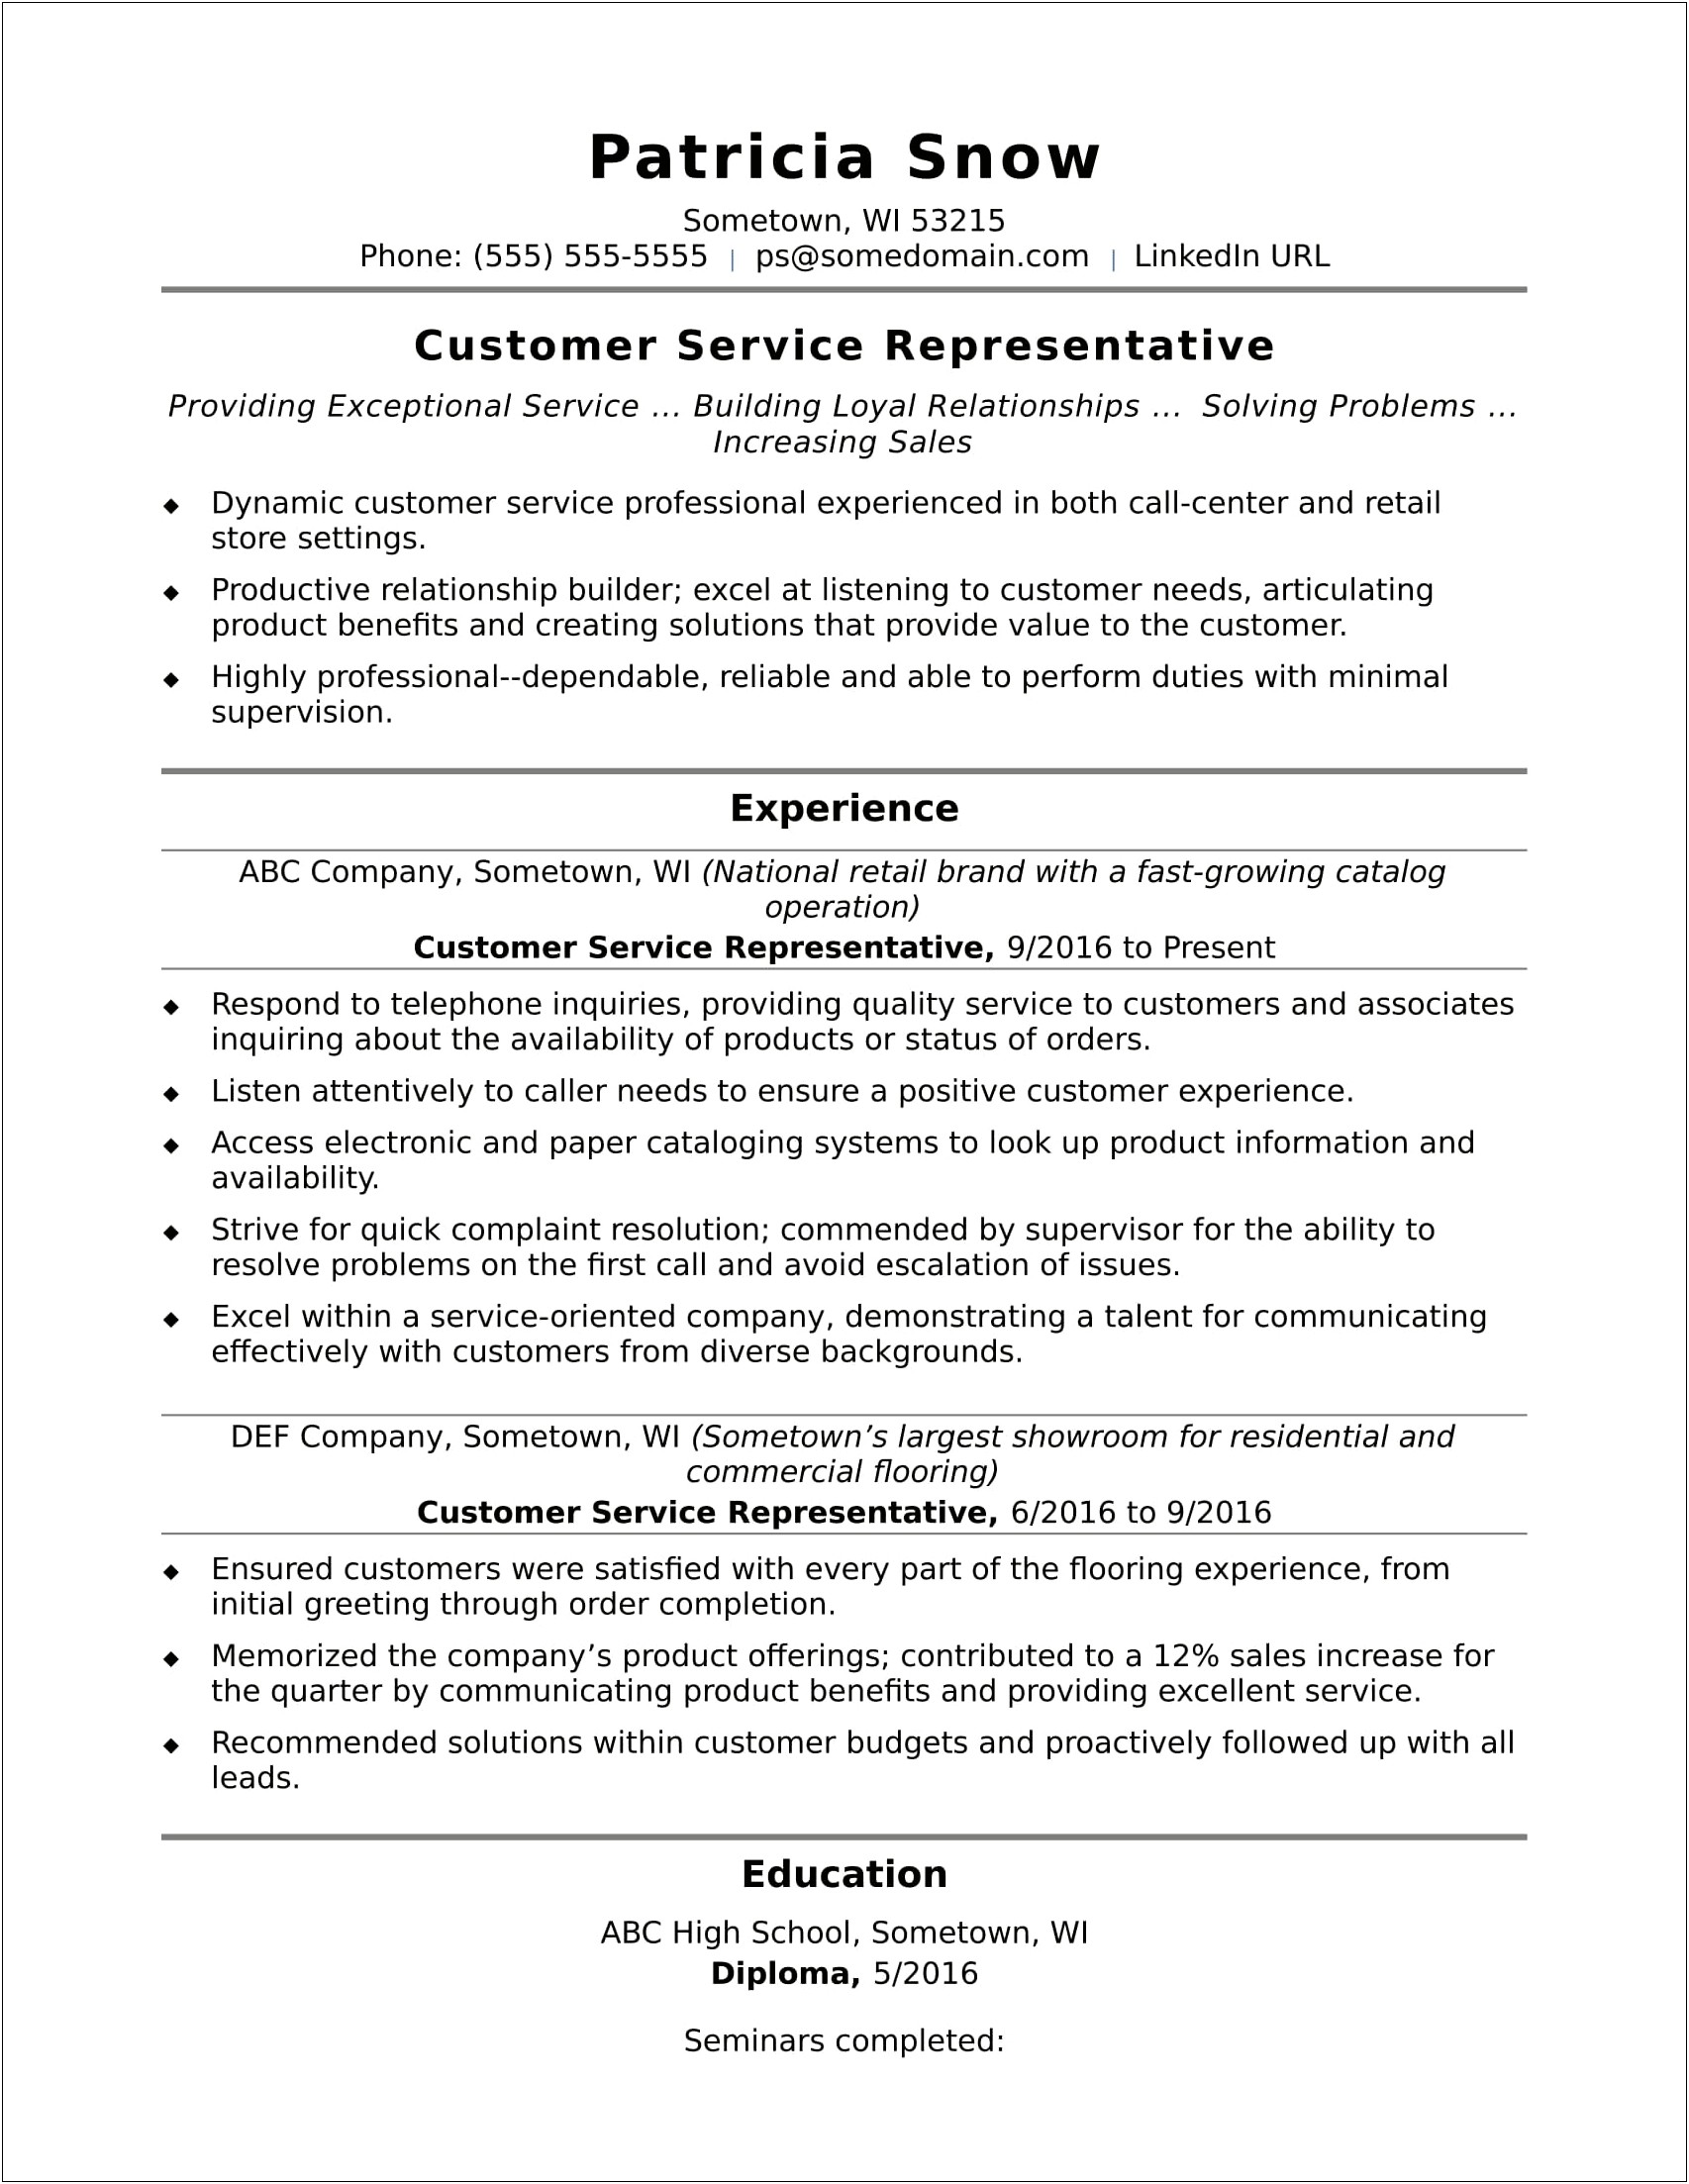 Resume Jobs In Customer Servixe